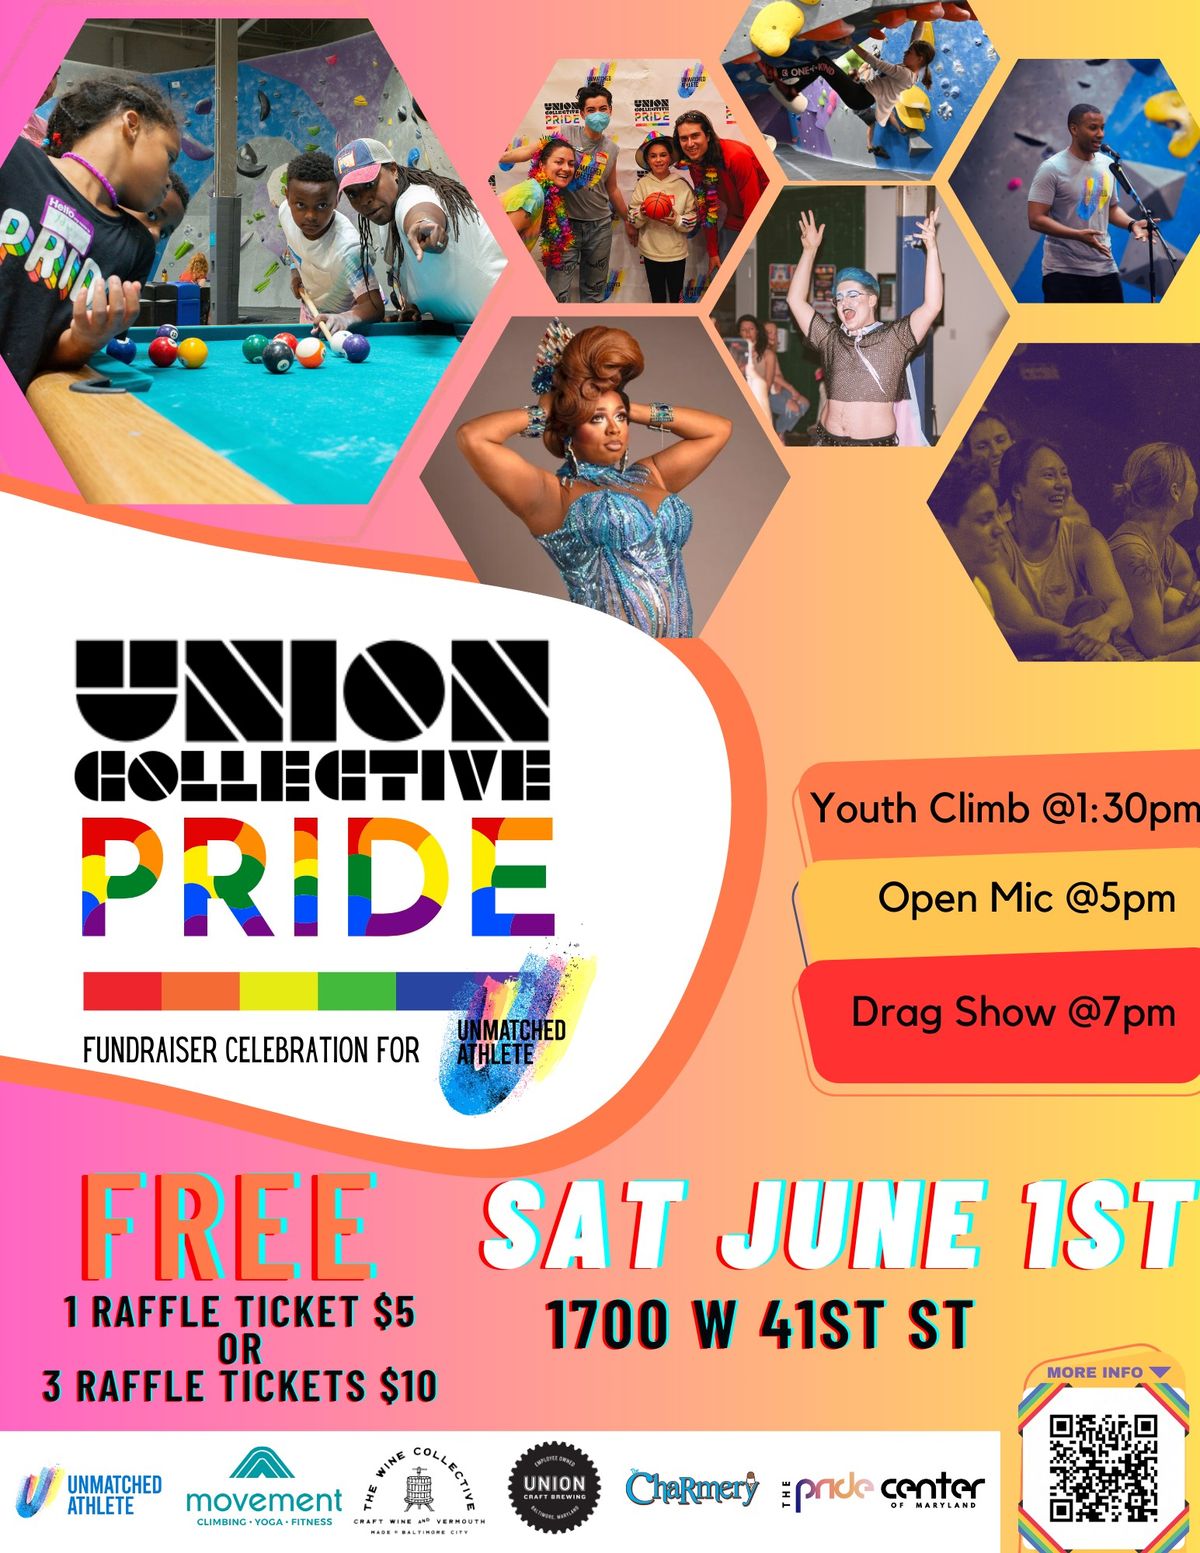 Union Collective Pride